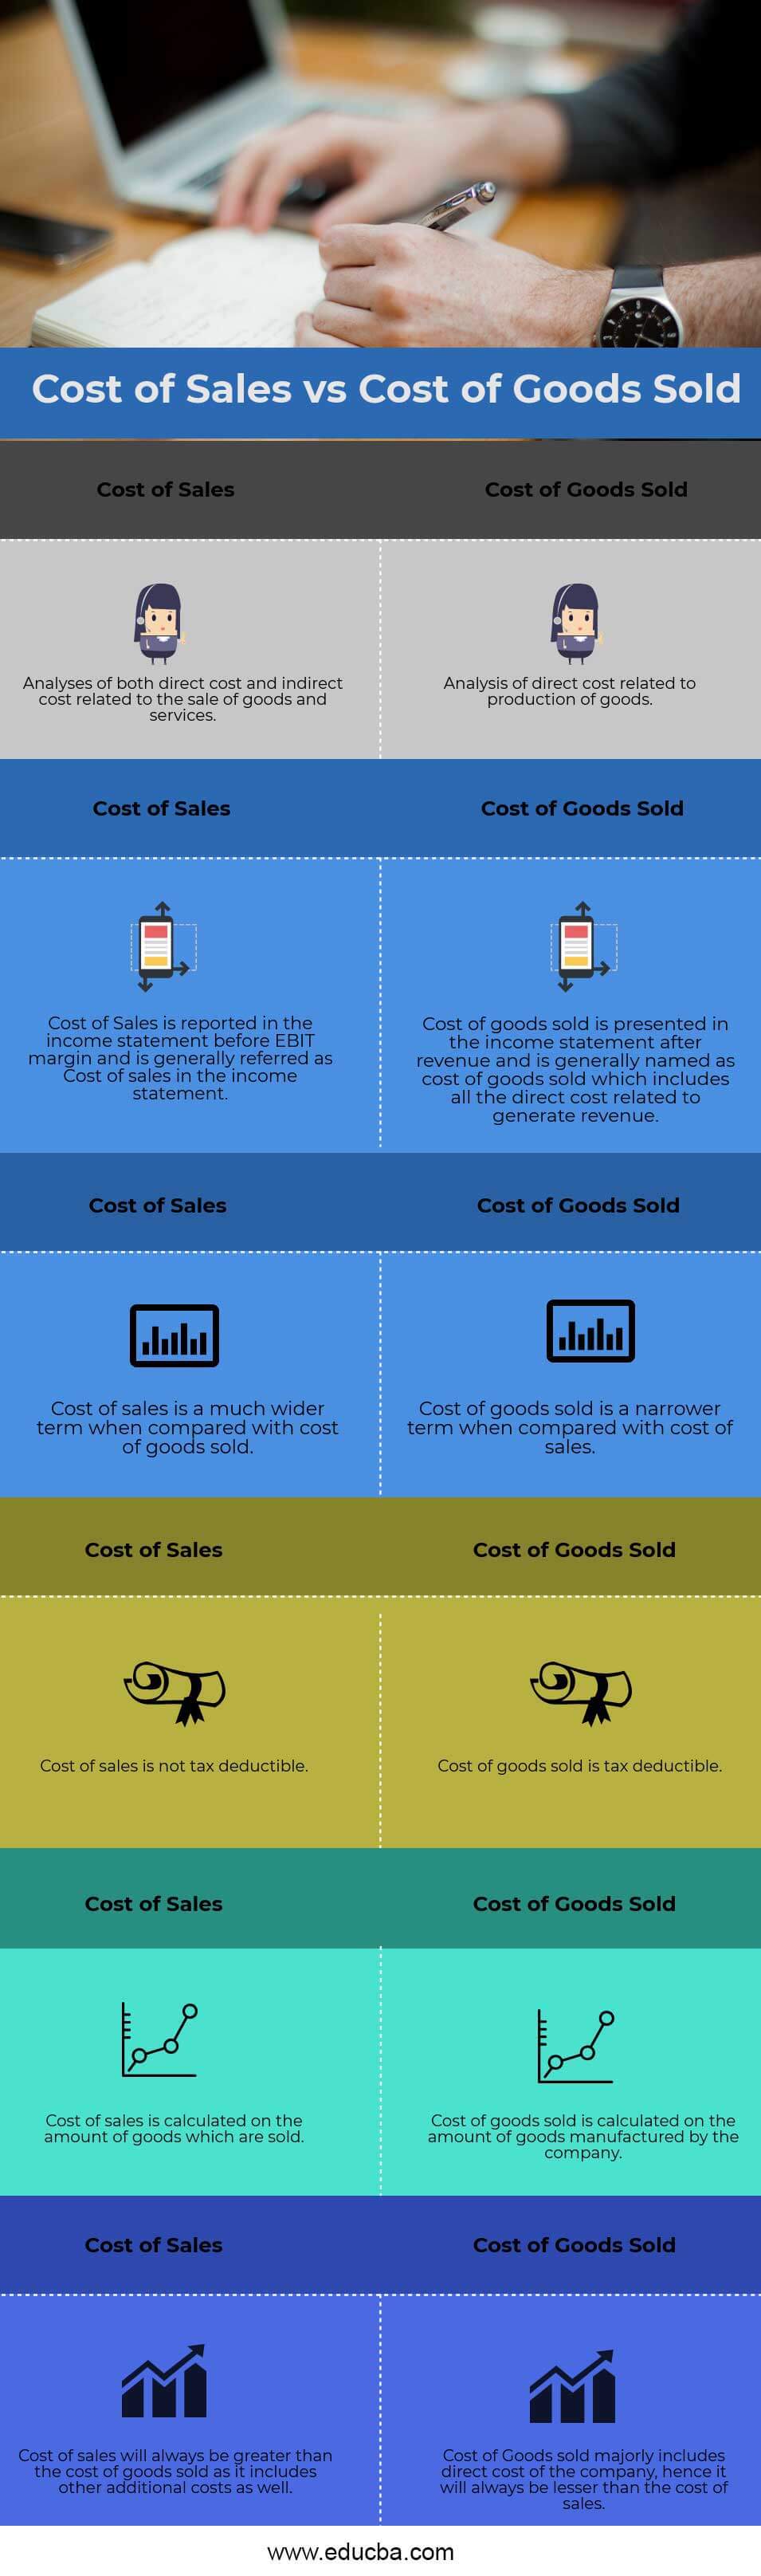 Costo de ventas versus costo de bienes vendidos